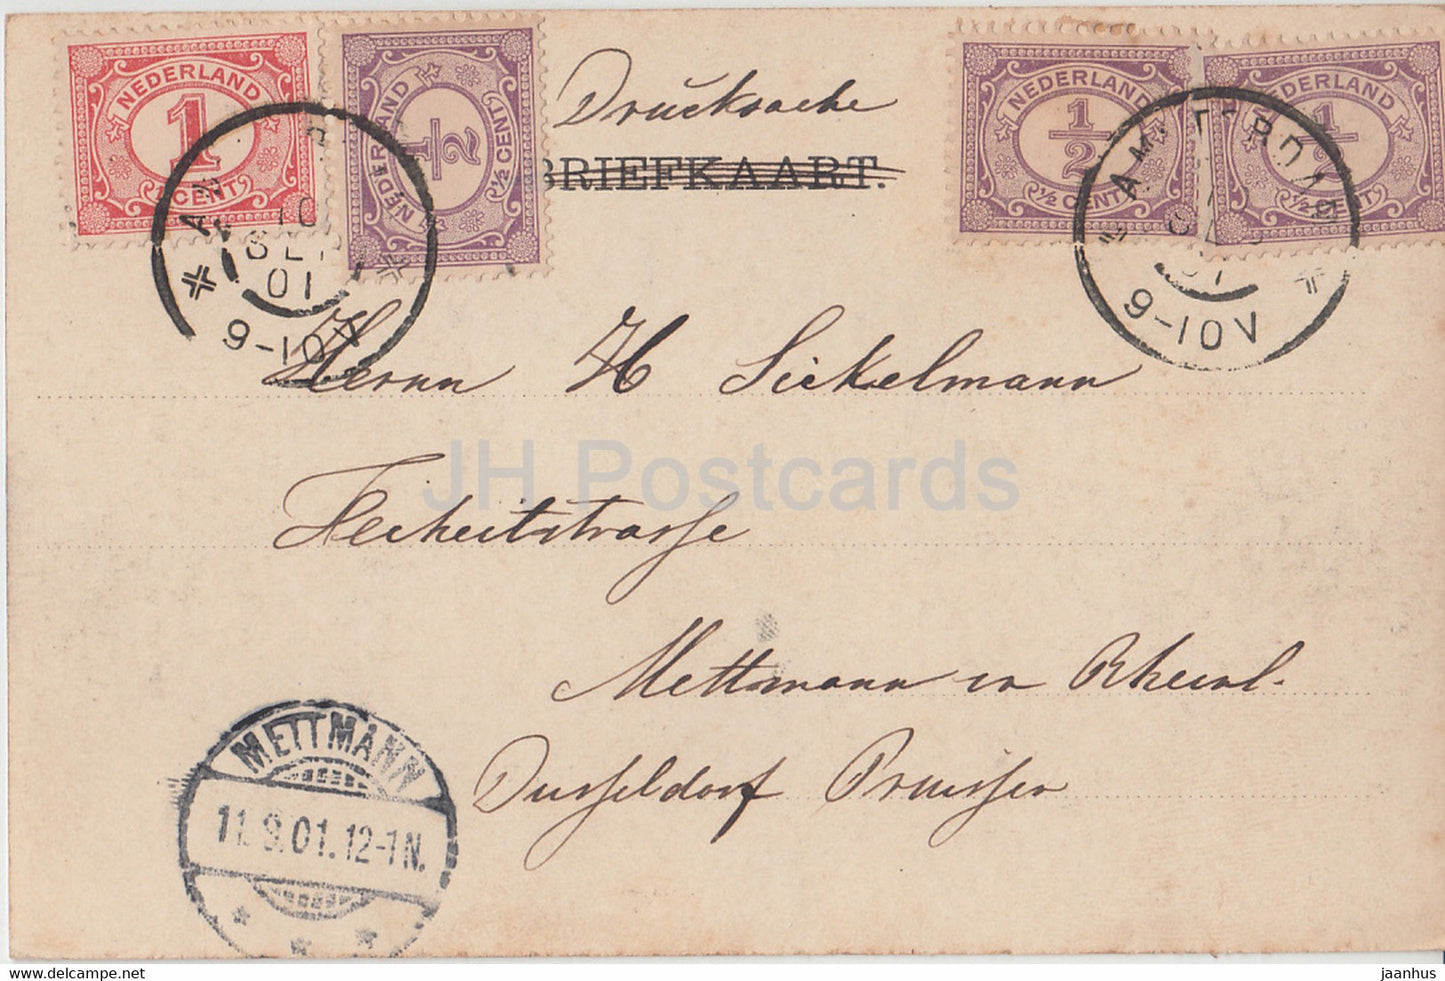 Amsterdam - Het Y  met de West Indische Mail - ship - old postcard - 1901 - Netherlands - used